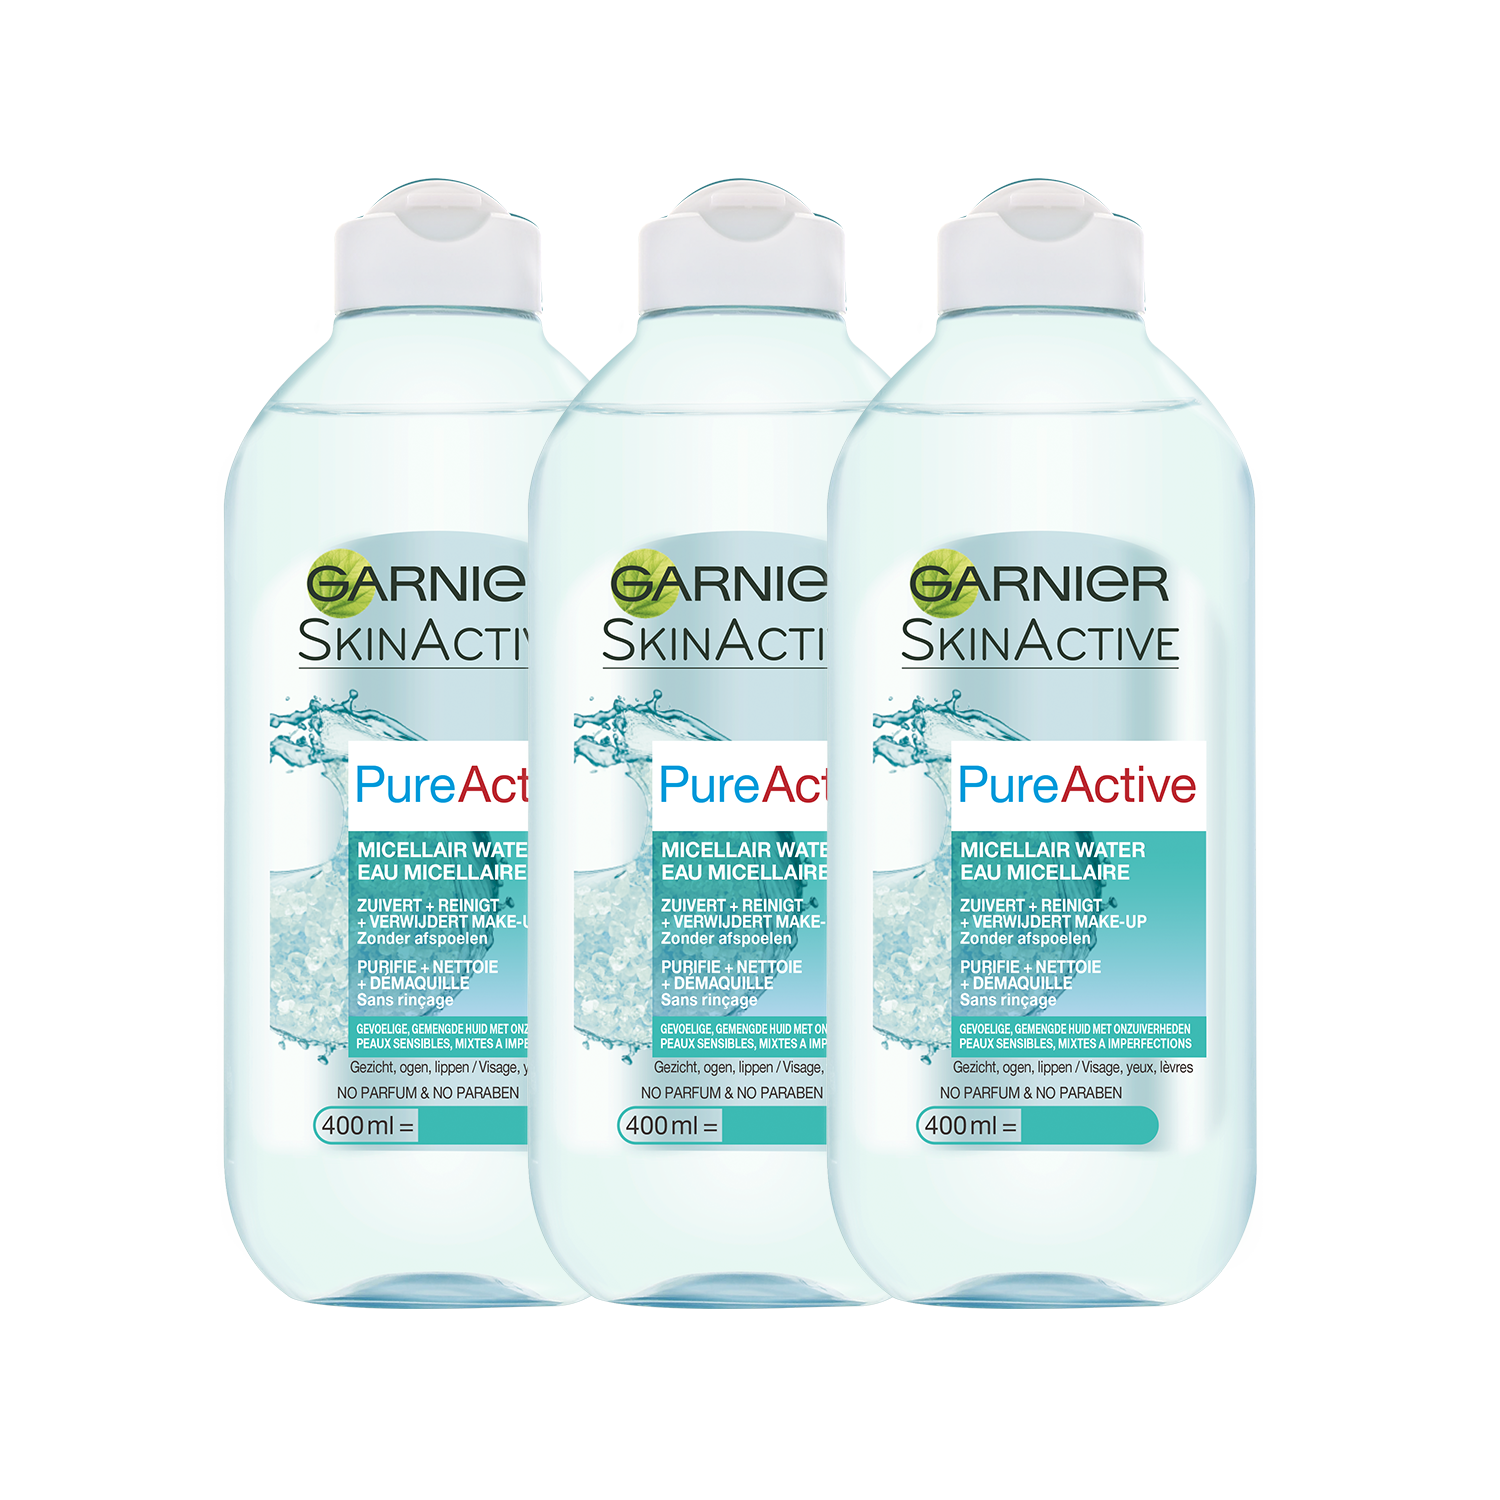 Garnier Skinactive Face Micellair Water Pure Active Gevoelige & Gemengde tot Vette Huid - 3 x 400ml - Gezichtsreiniging